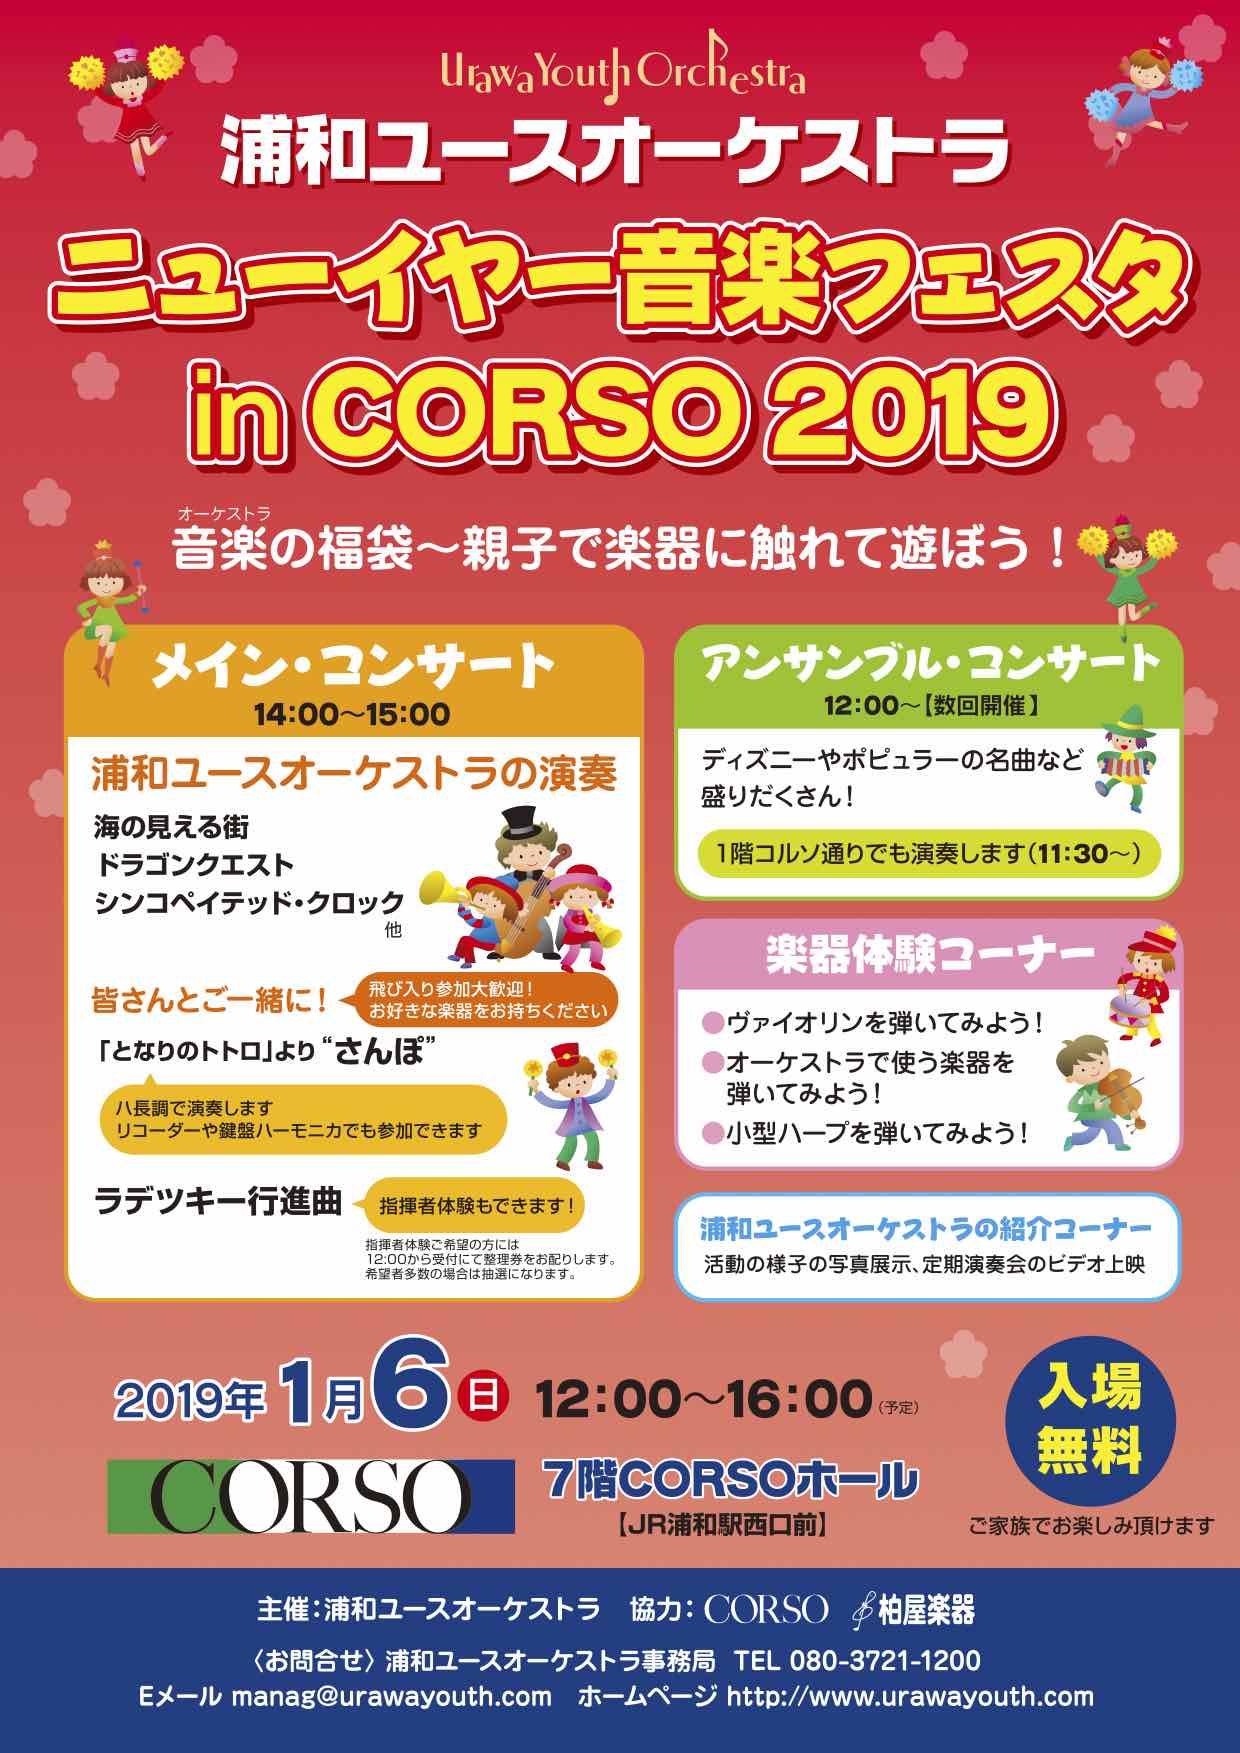 ニューイヤー音楽フェスタ in CORSO 2019